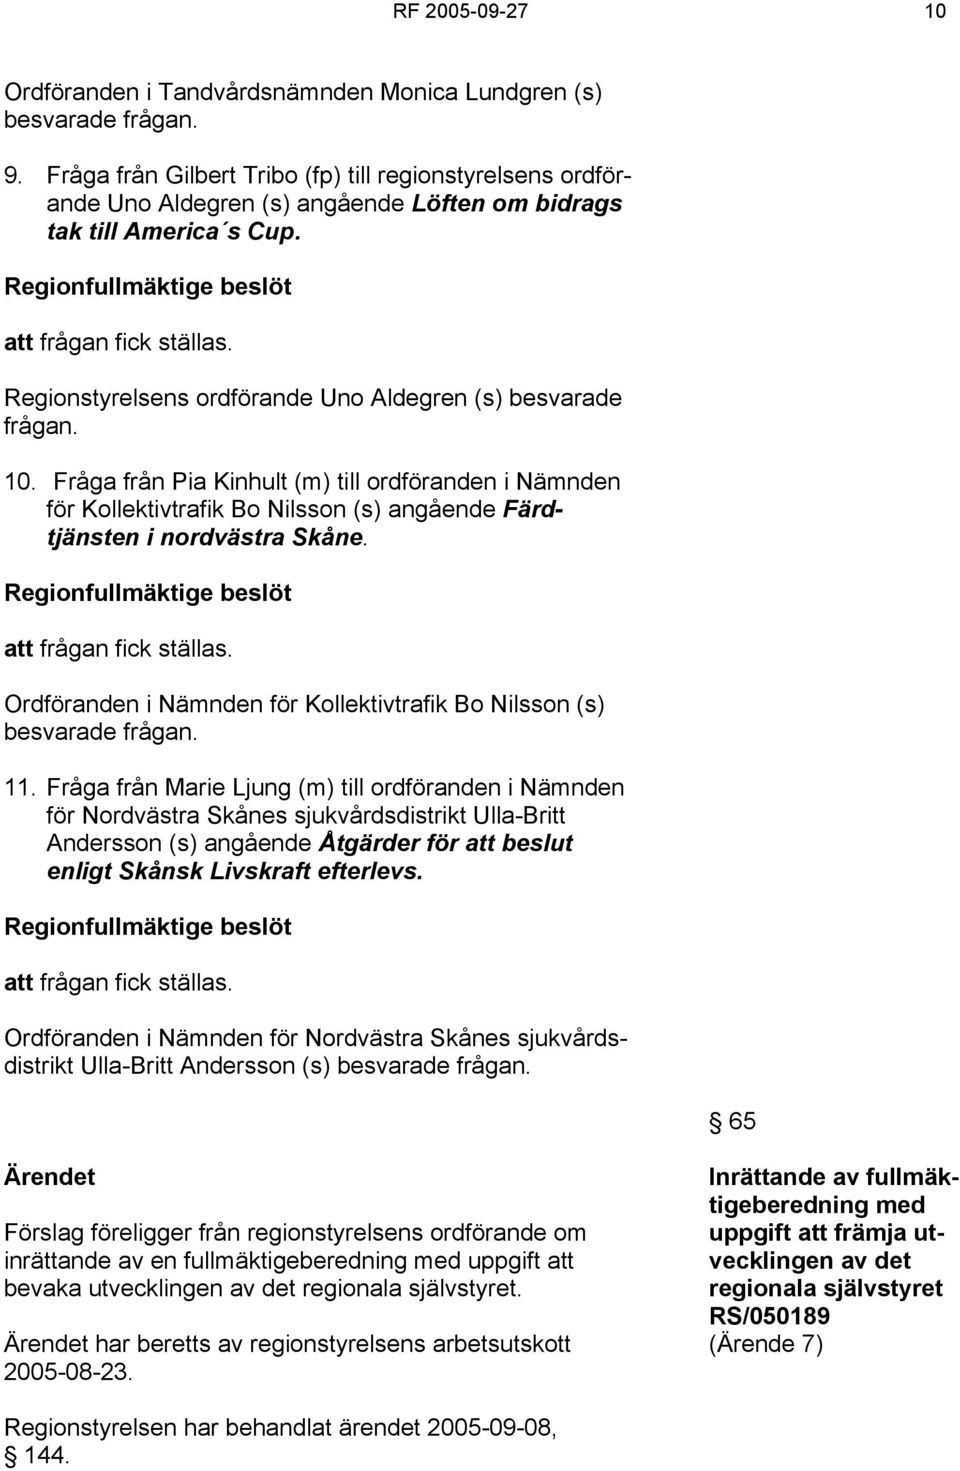 Regionstyrelsens ordförande Uno Aldegren (s) besvarade frågan. 10. Fråga från Pia Kinhult (m) till ordföranden i Nämnden för Kollektivtrafik Bo Nilsson (s) angående Färdtjänsten i nordvästra Skåne.